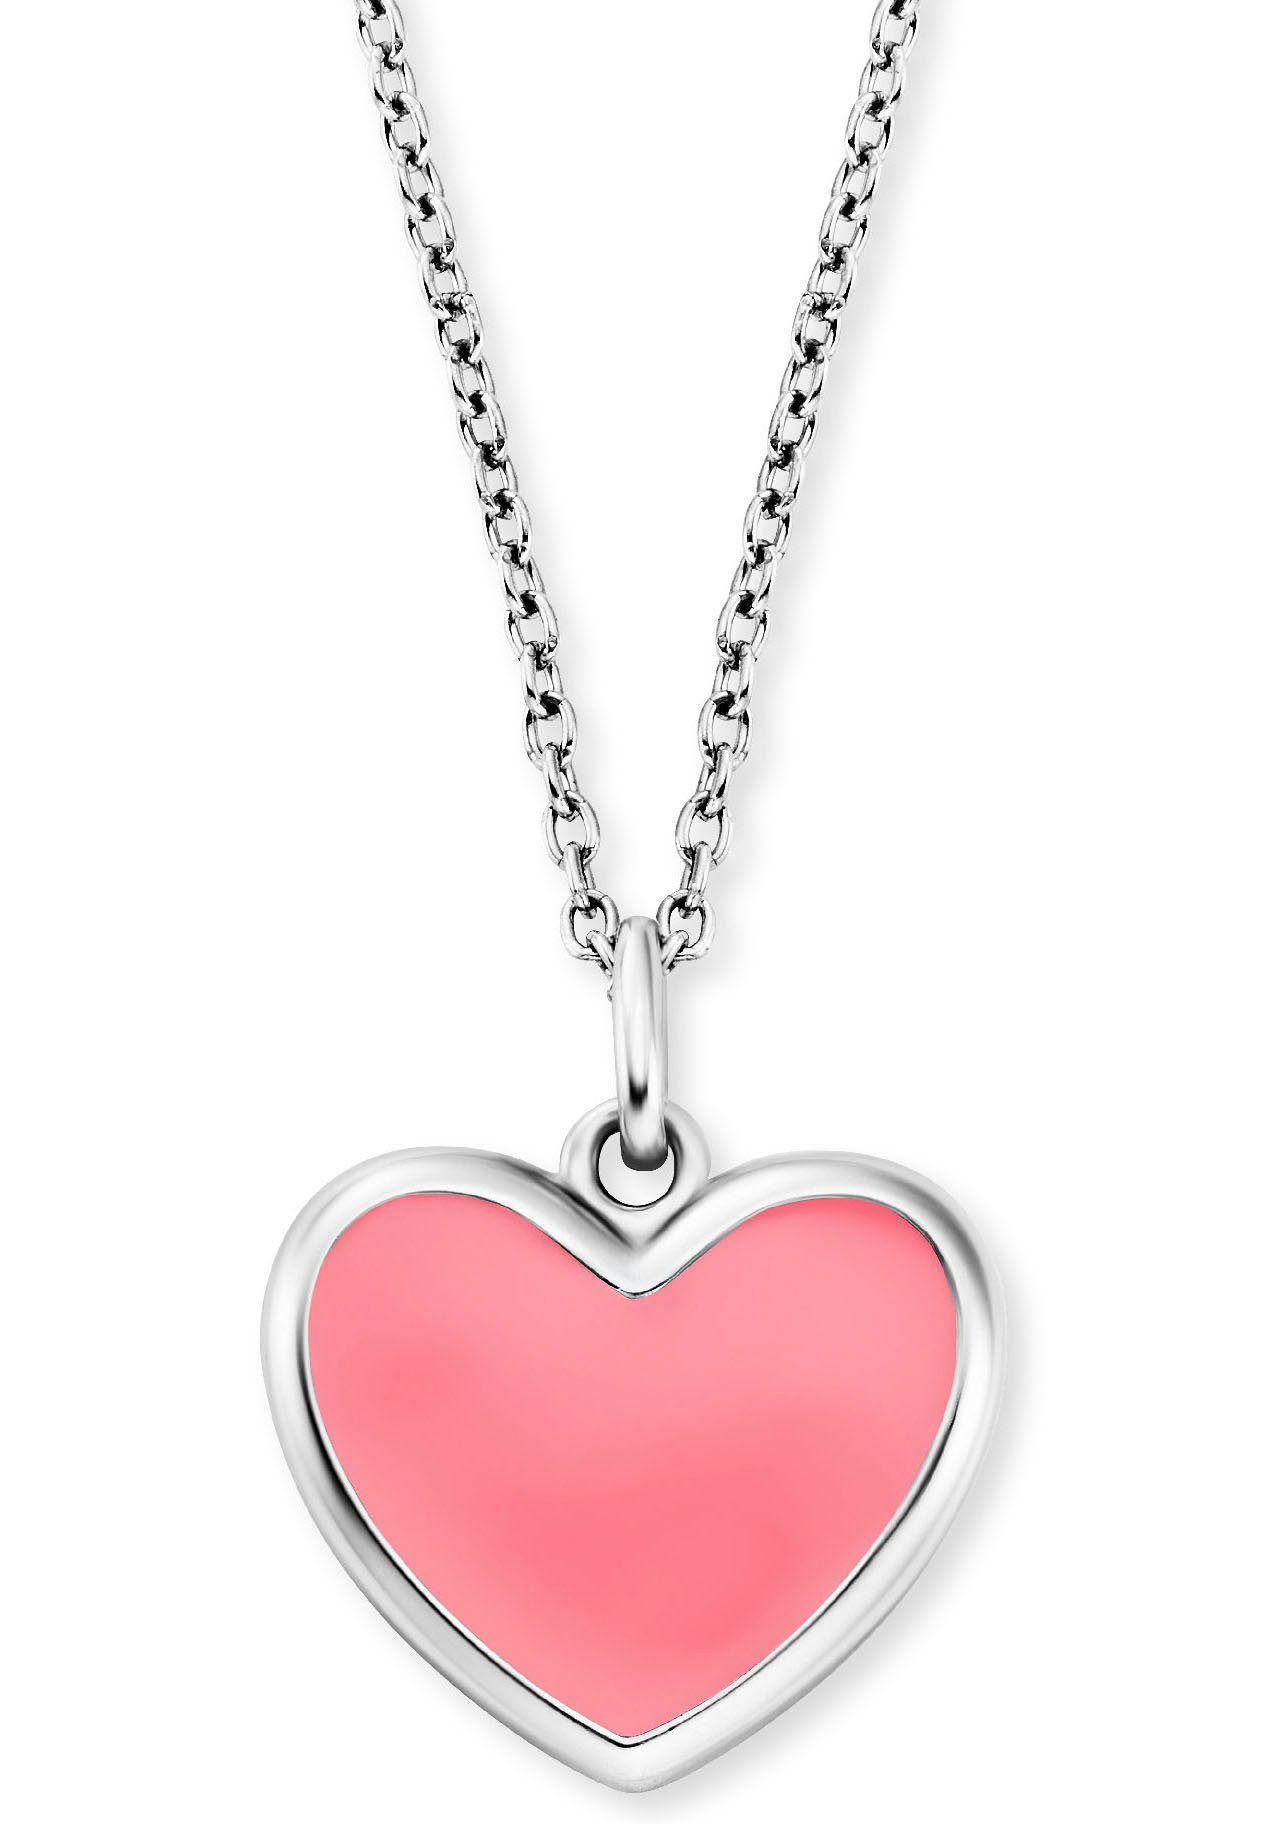 Herzengel Kette mit Anhänger Schmuck Geschenk, Little Heart, Herz, HEN-HEART-06, HEN-HEART-13 silberfarben-rosa | Silberketten